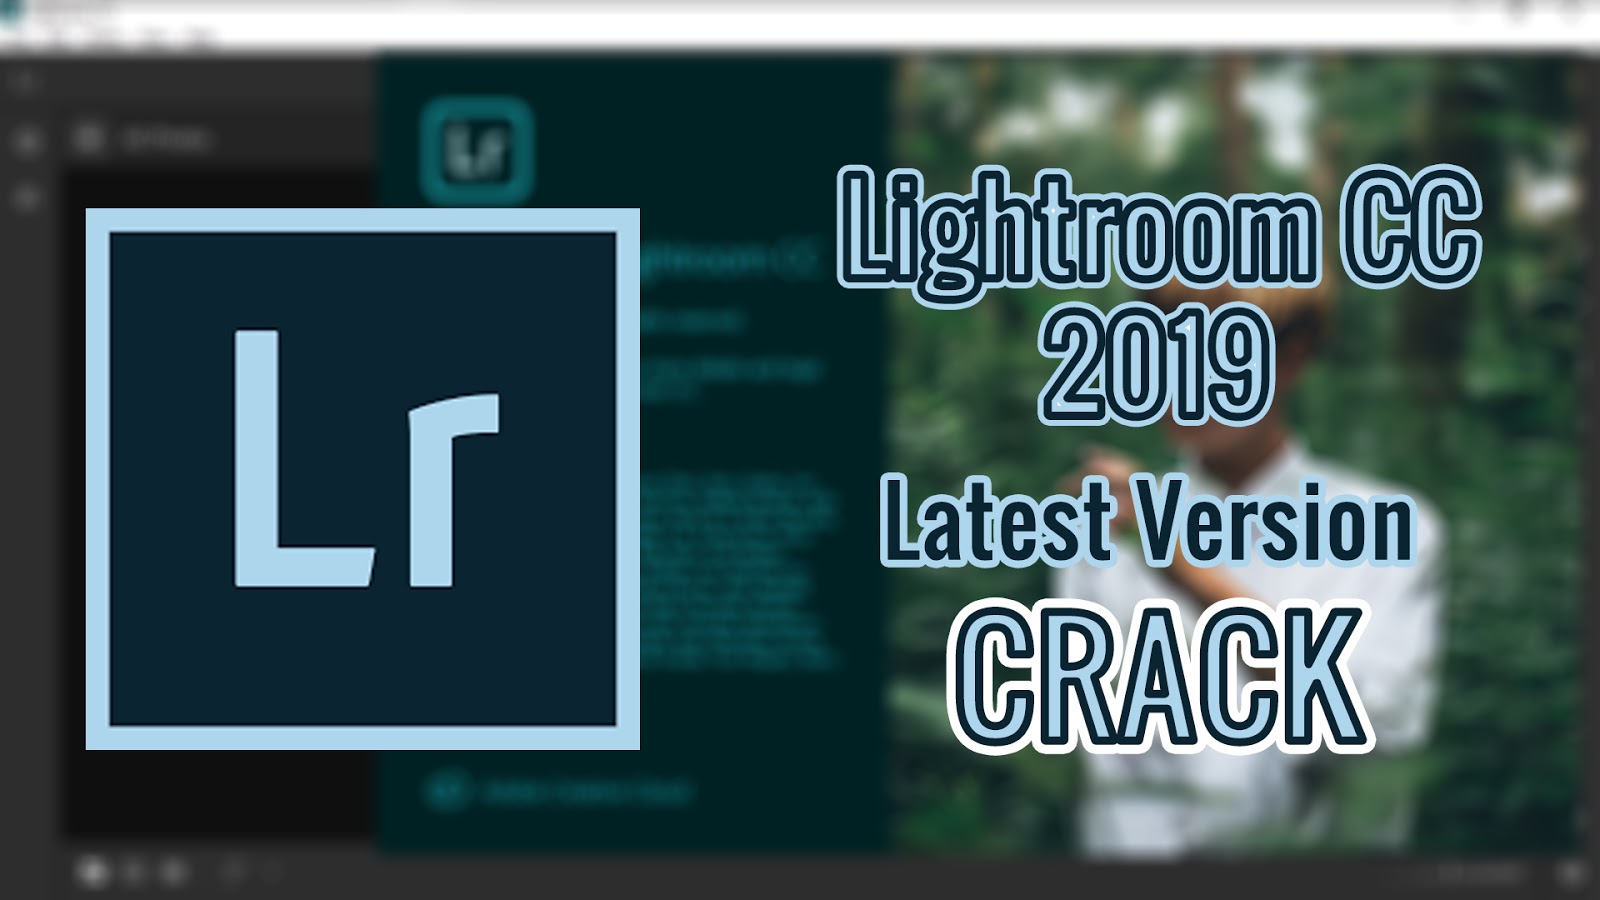 adobe lightroom classic cc 2019 8.1 crack